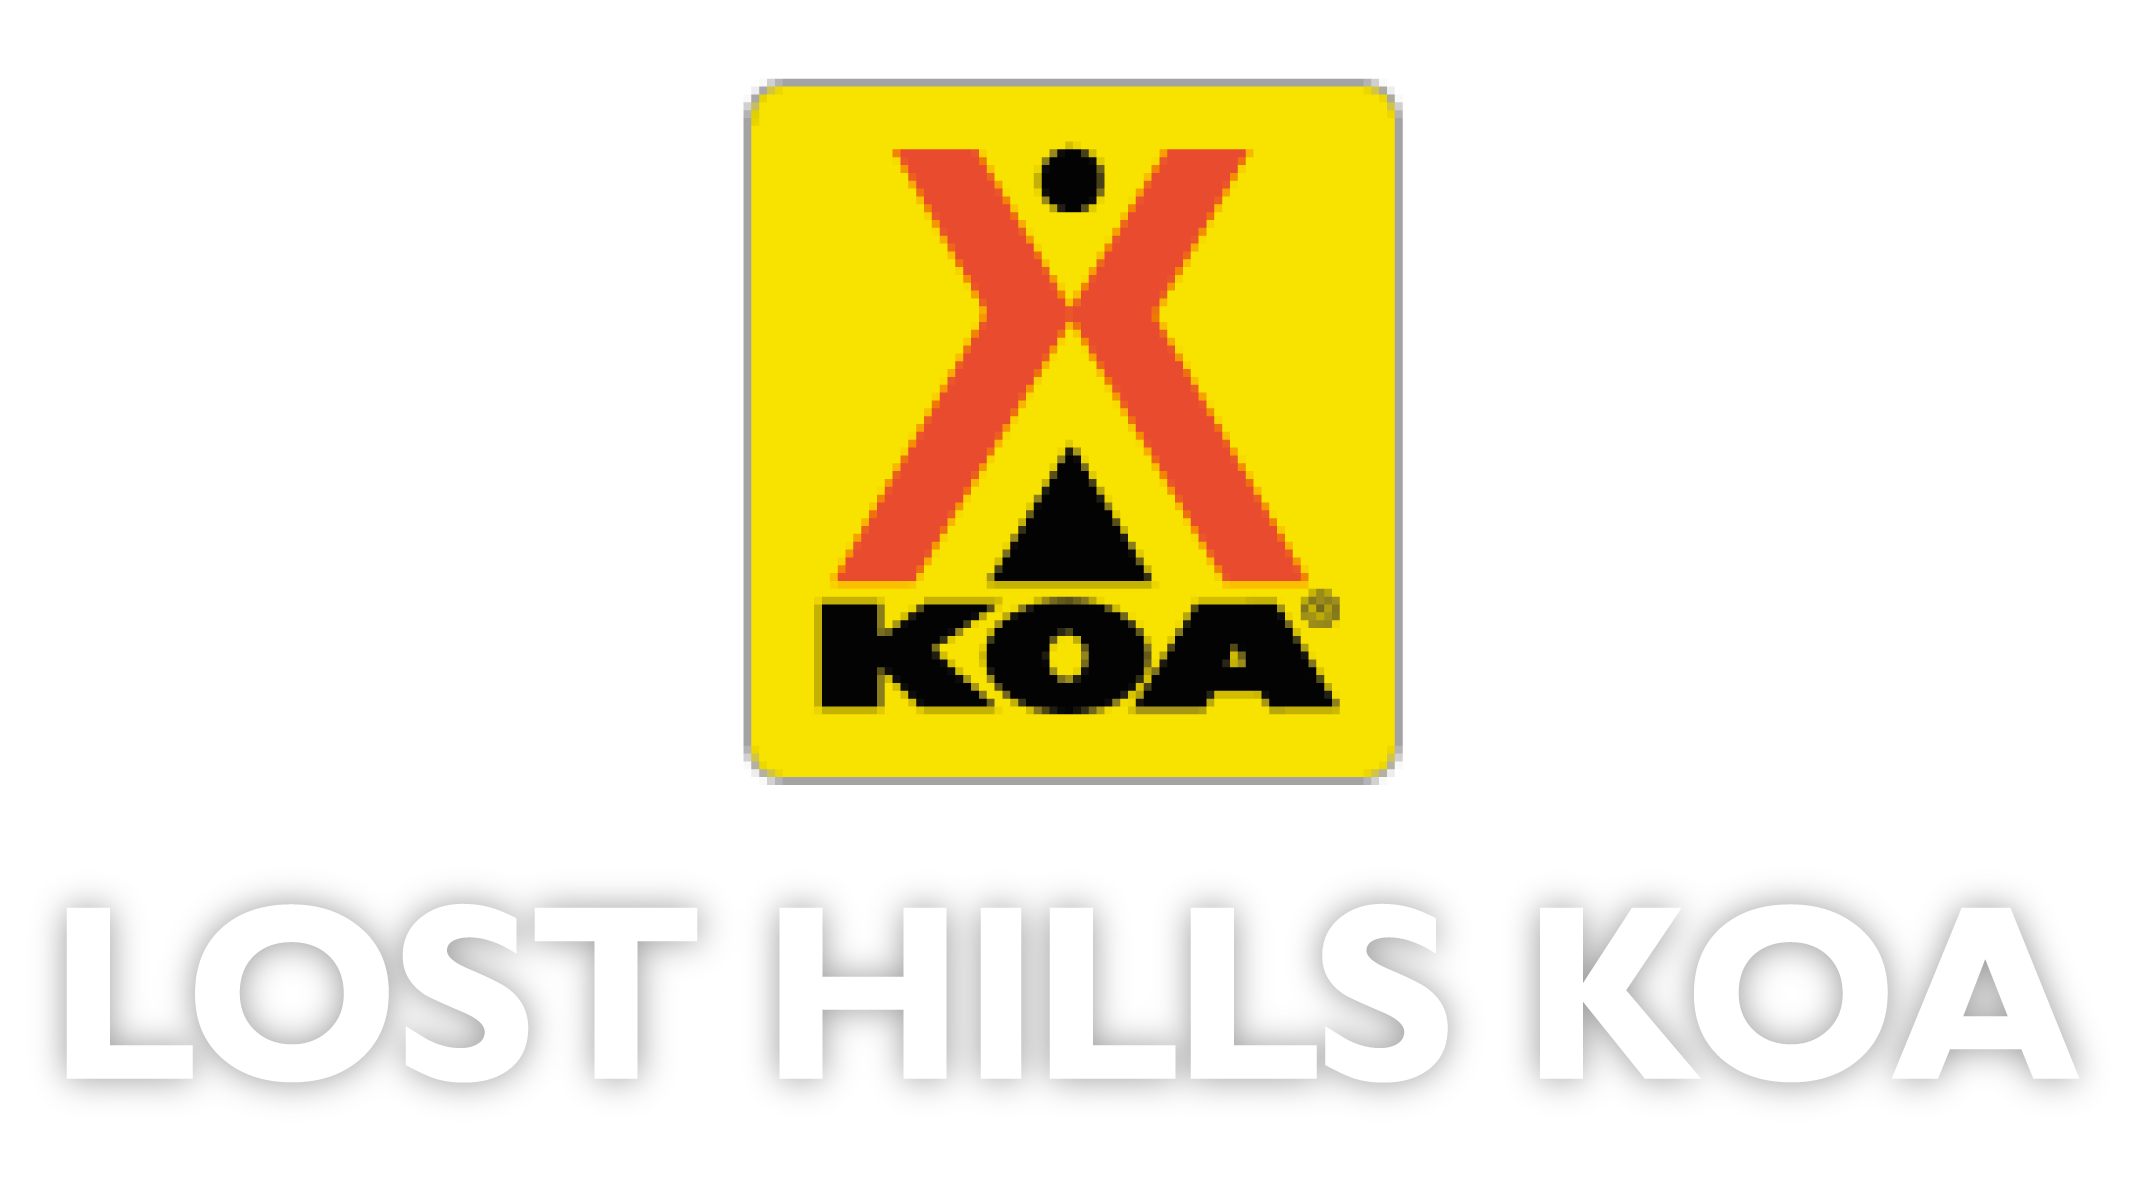 Lost Hills KOA 
		- 14831 Warren St, Lost Hills, 
		California - 93249, USA